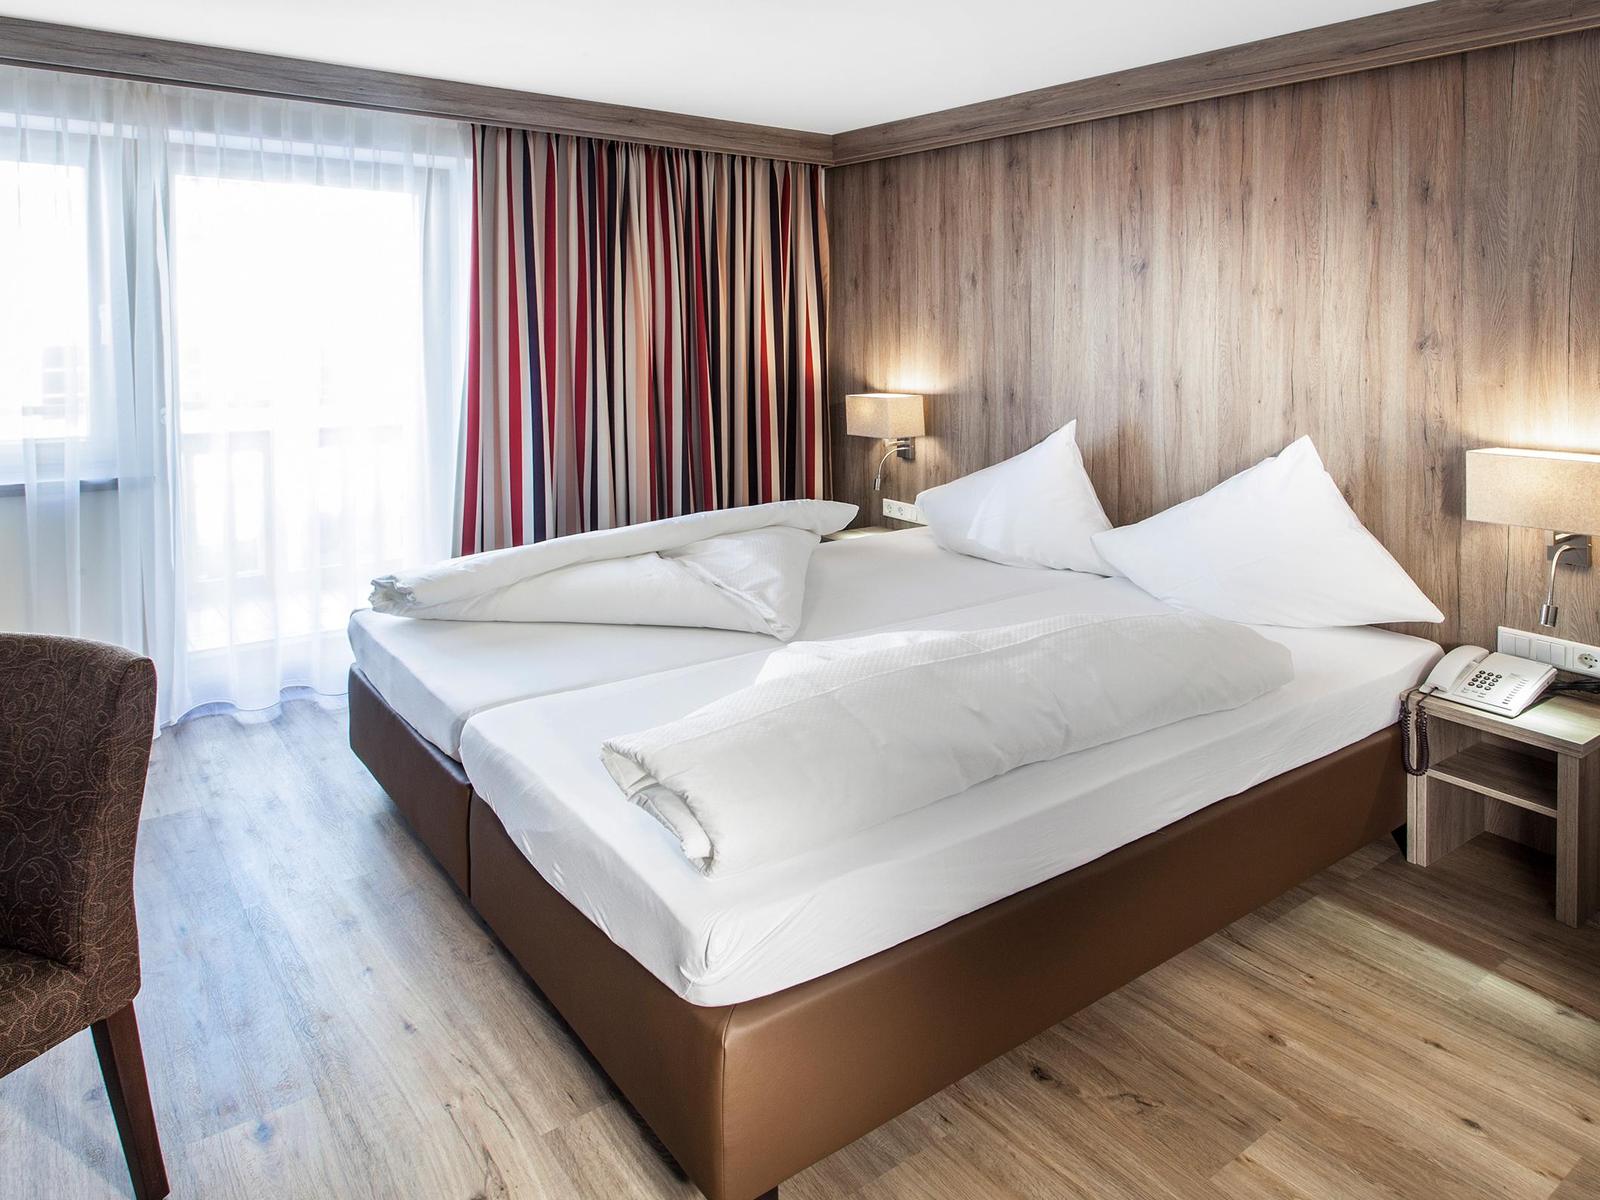 Zimmer mit Zirbenholz im 4-Sterne-Hotel Reiterkogel